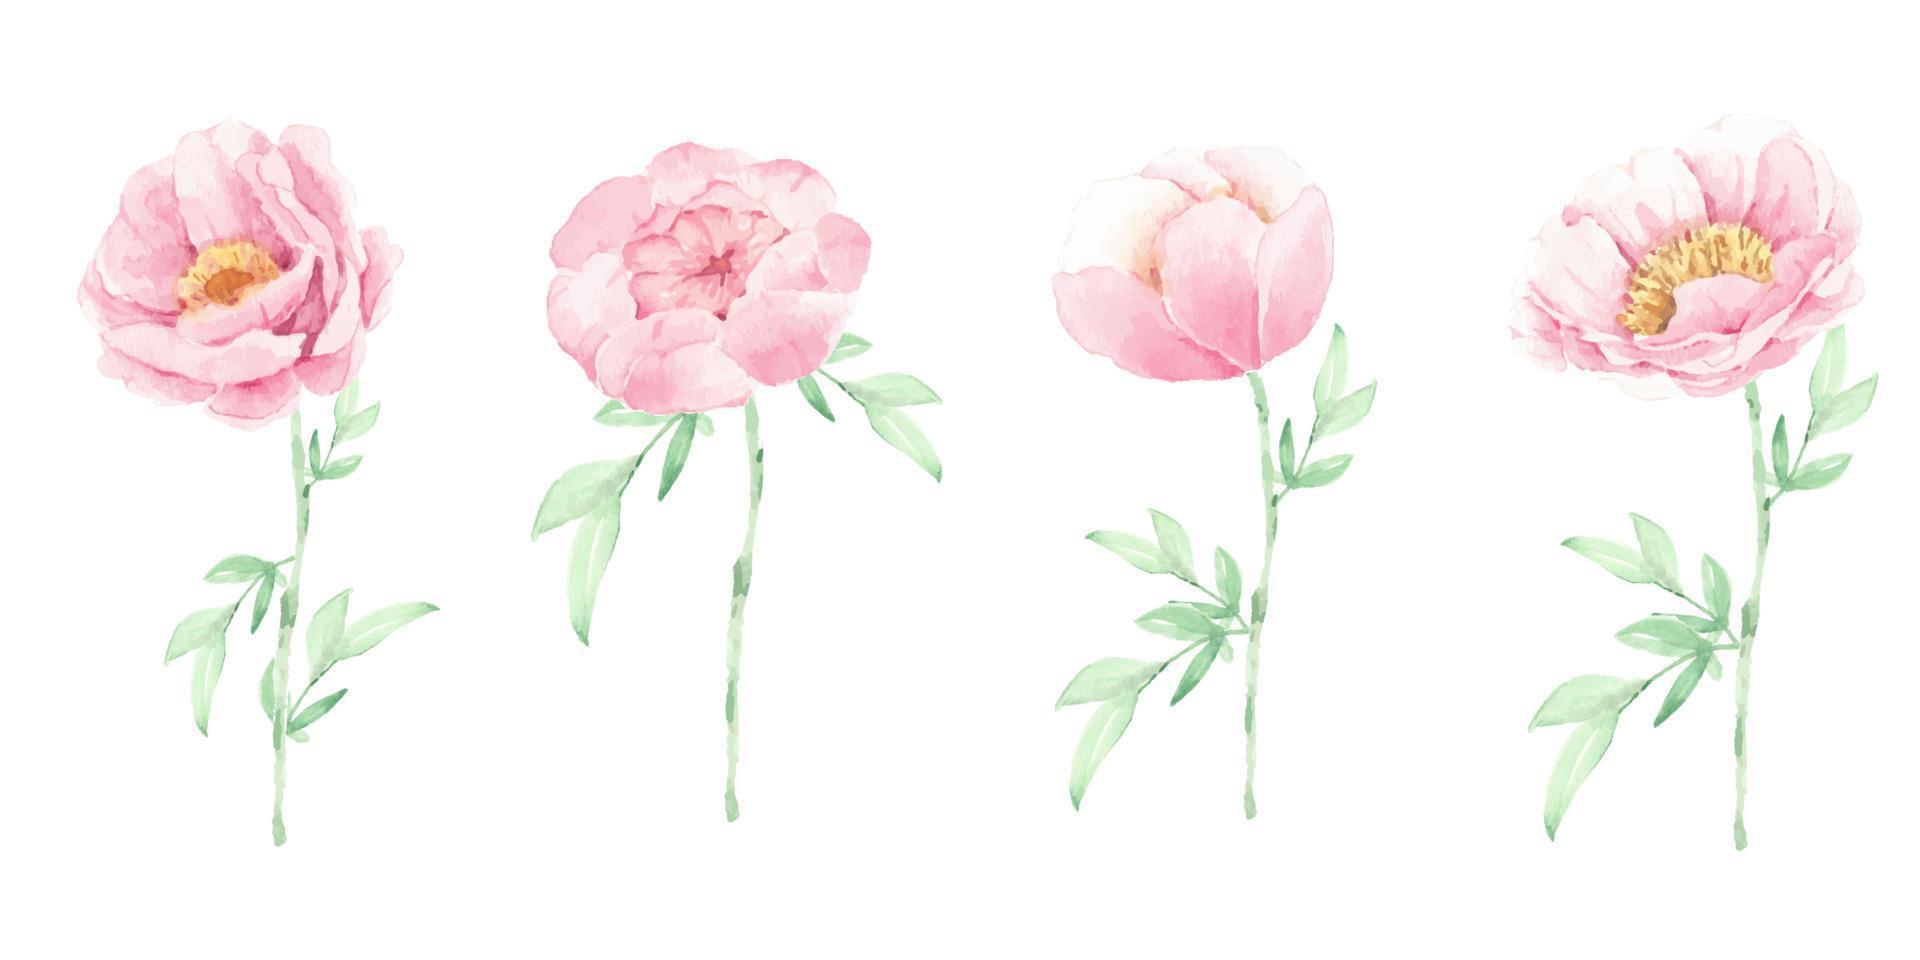 flor de peonía rosa acuarela y elementos de hojas verdes aislados sobre fondo blanco vector